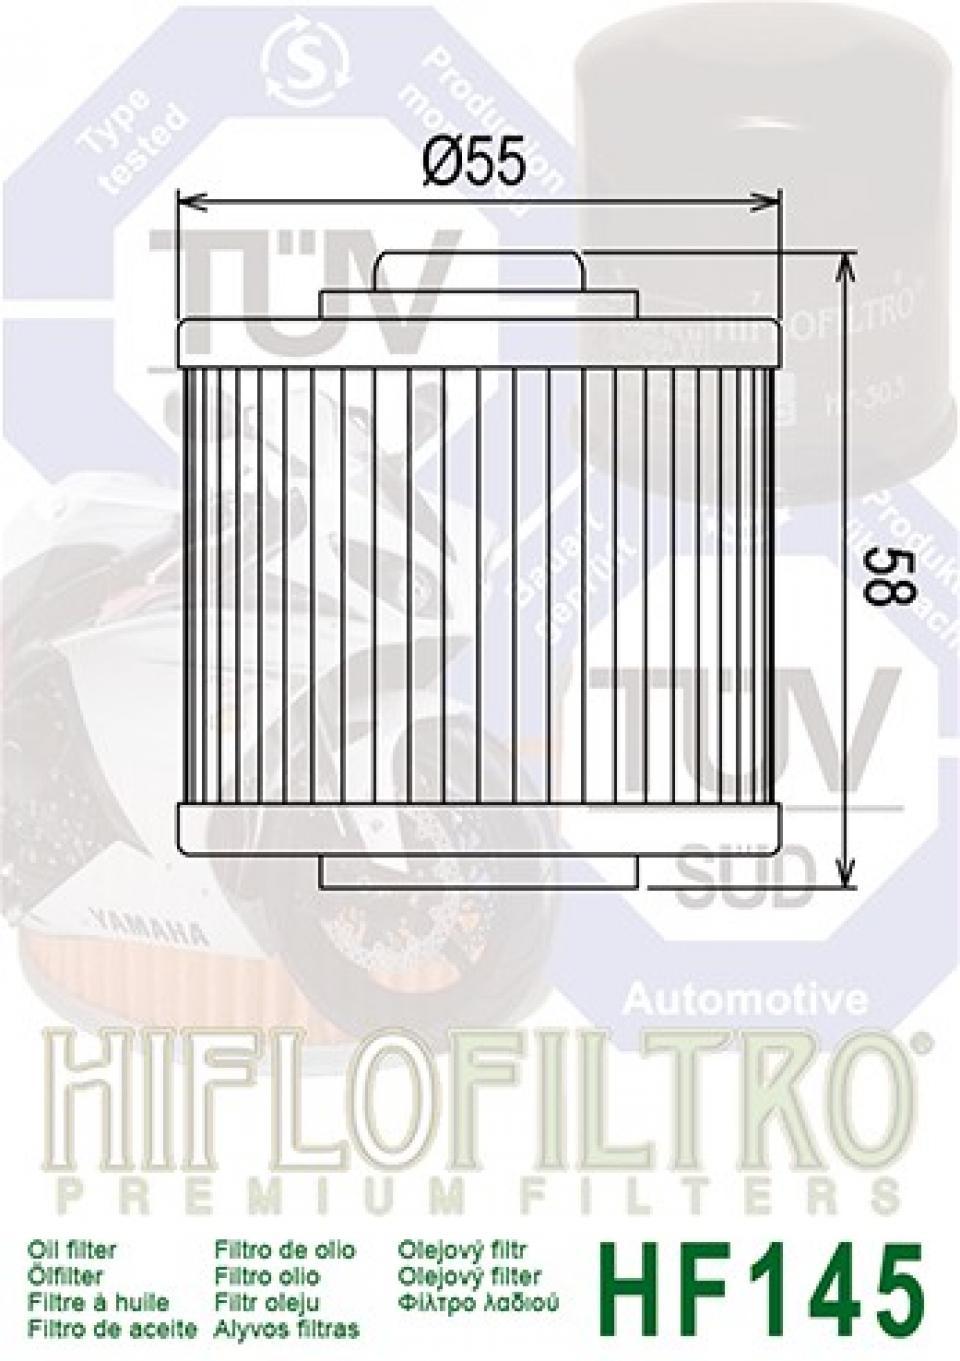 Filtre à huile Hiflofiltro pour Moto Yamaha 600 XTE 1989 à 2003 Neuf